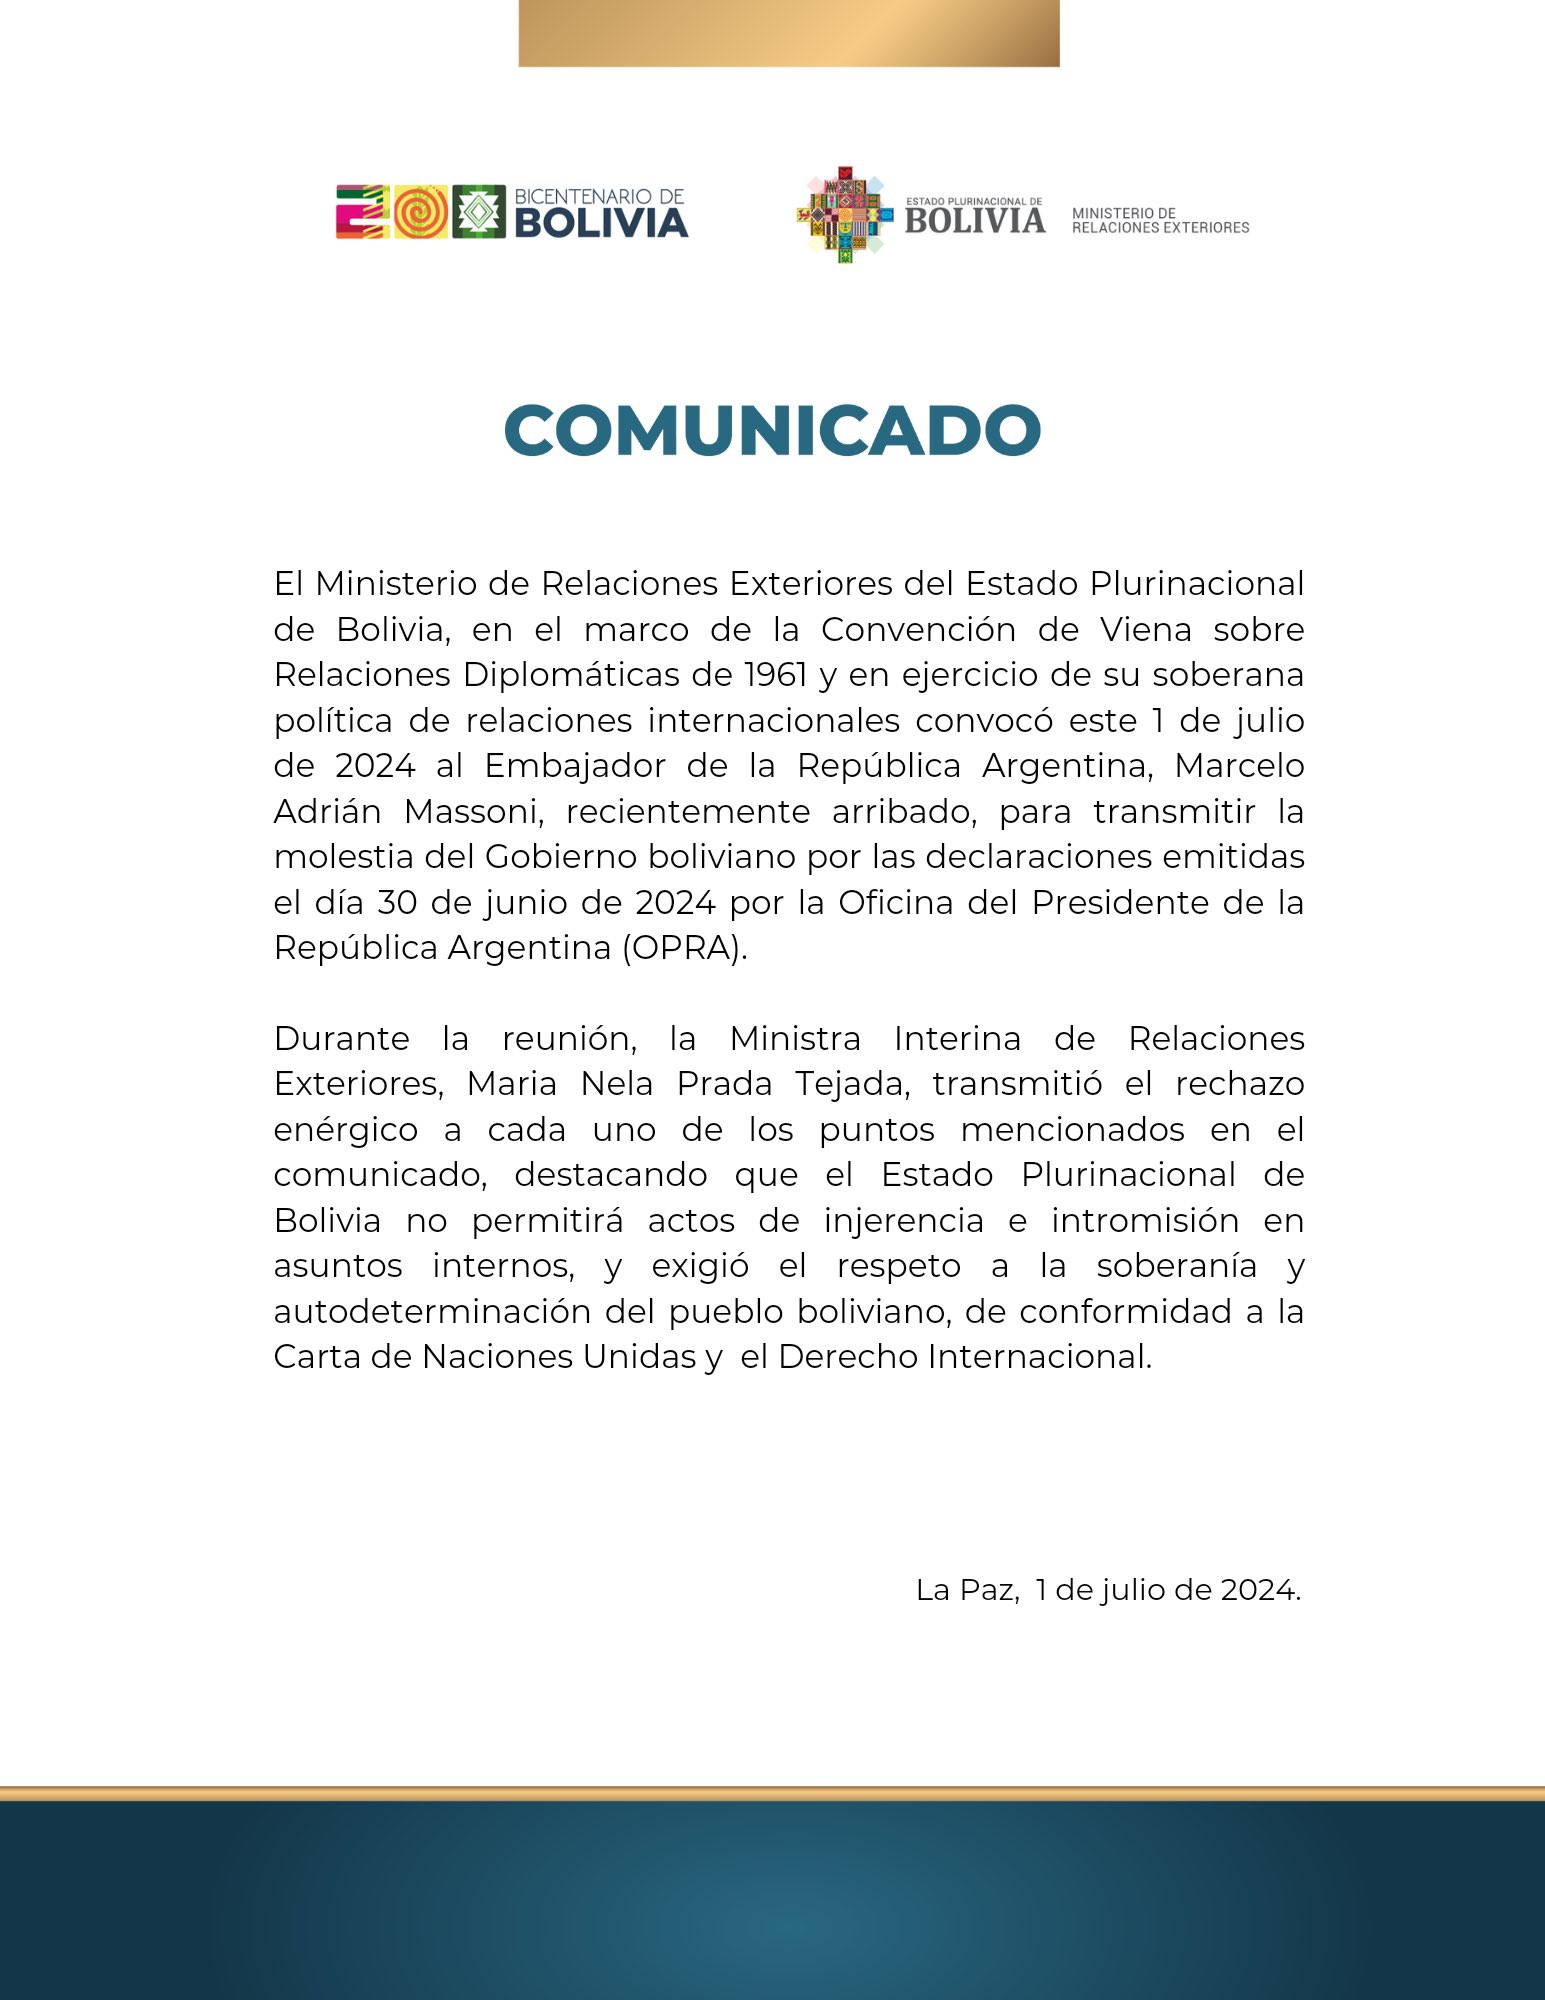 Bolivia retiró a su embajador en Buenos Aires • Canal C